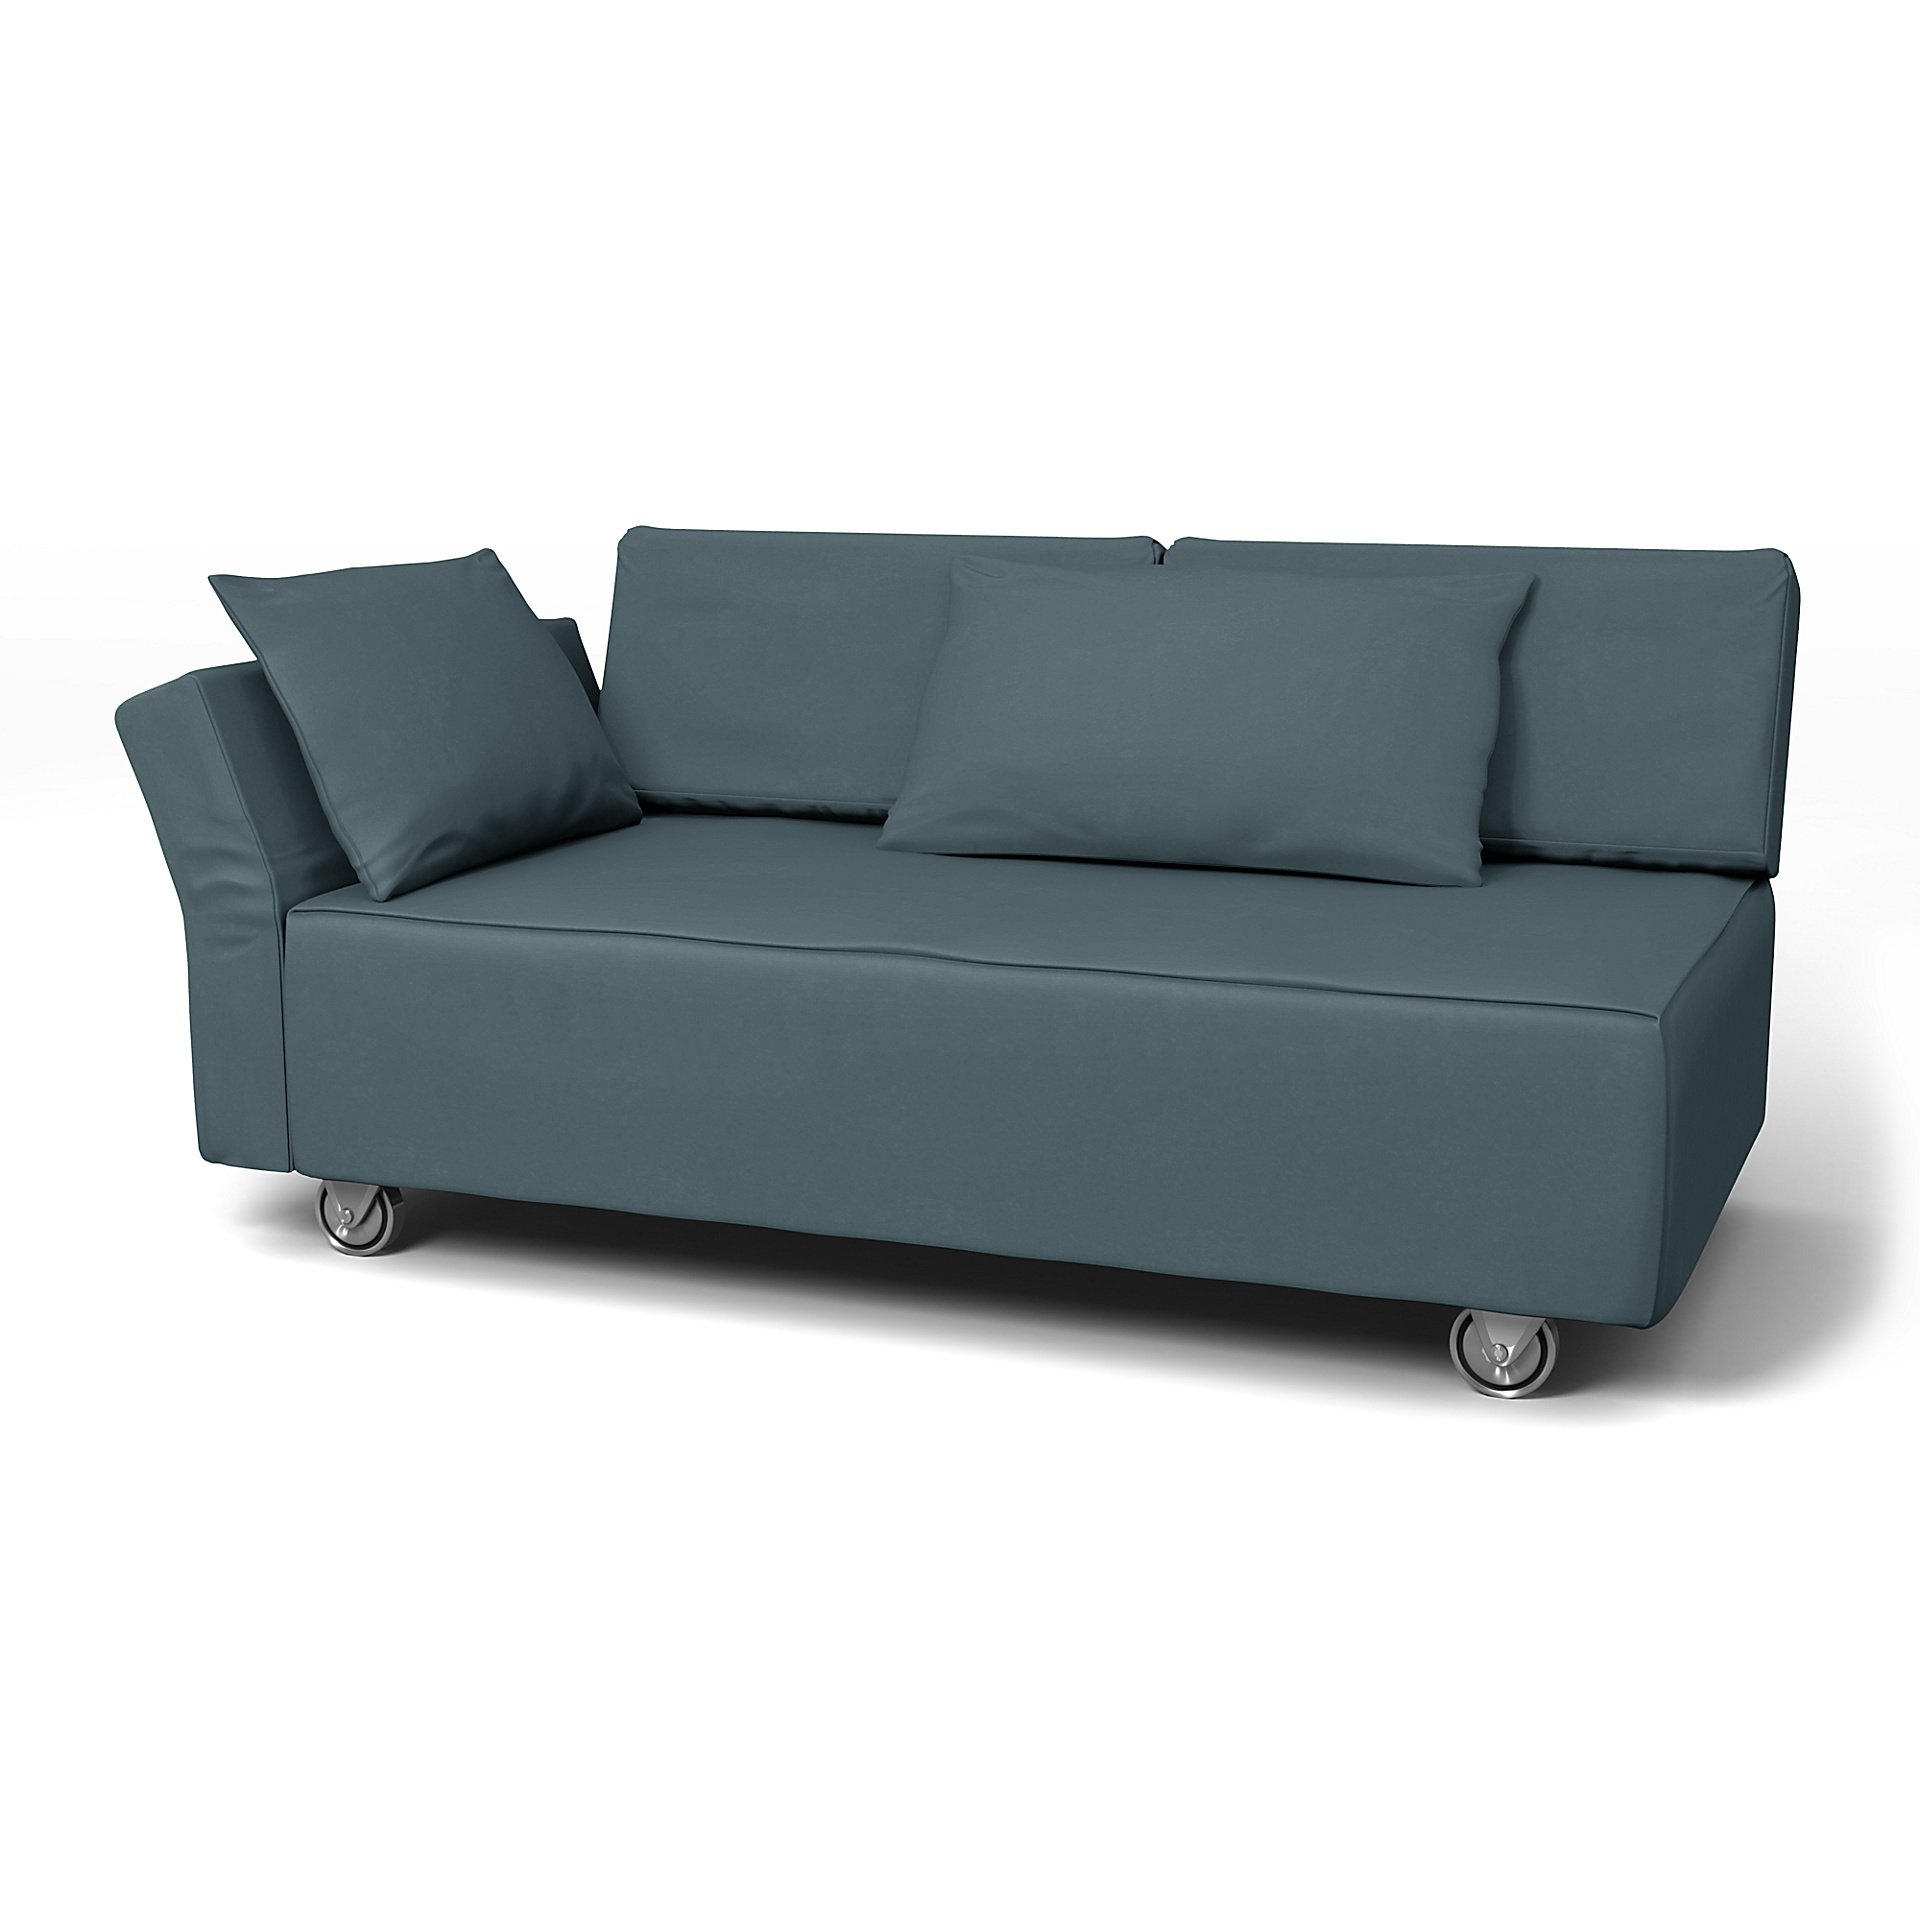 IKEA - Falsterbo 2 Seat Sofa with Left Arm Cover, Duck Egg, Velvet - Bemz